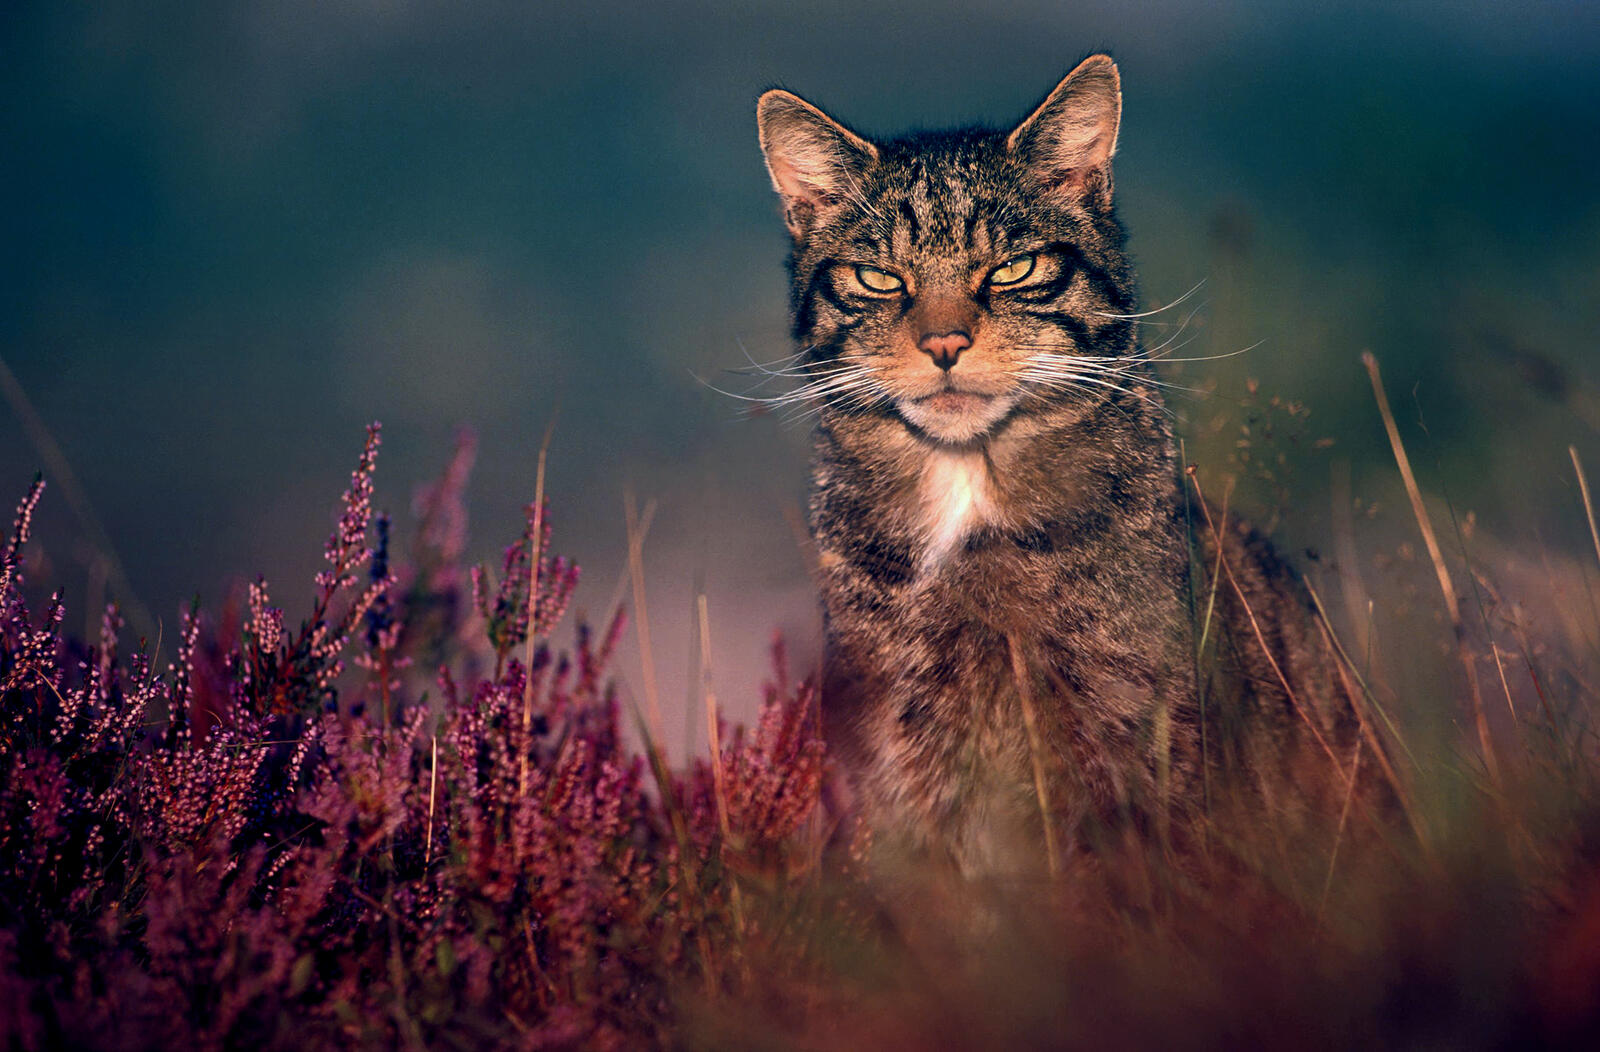 Бесплатное фото Дикий кот в траве смотрит на фотографа